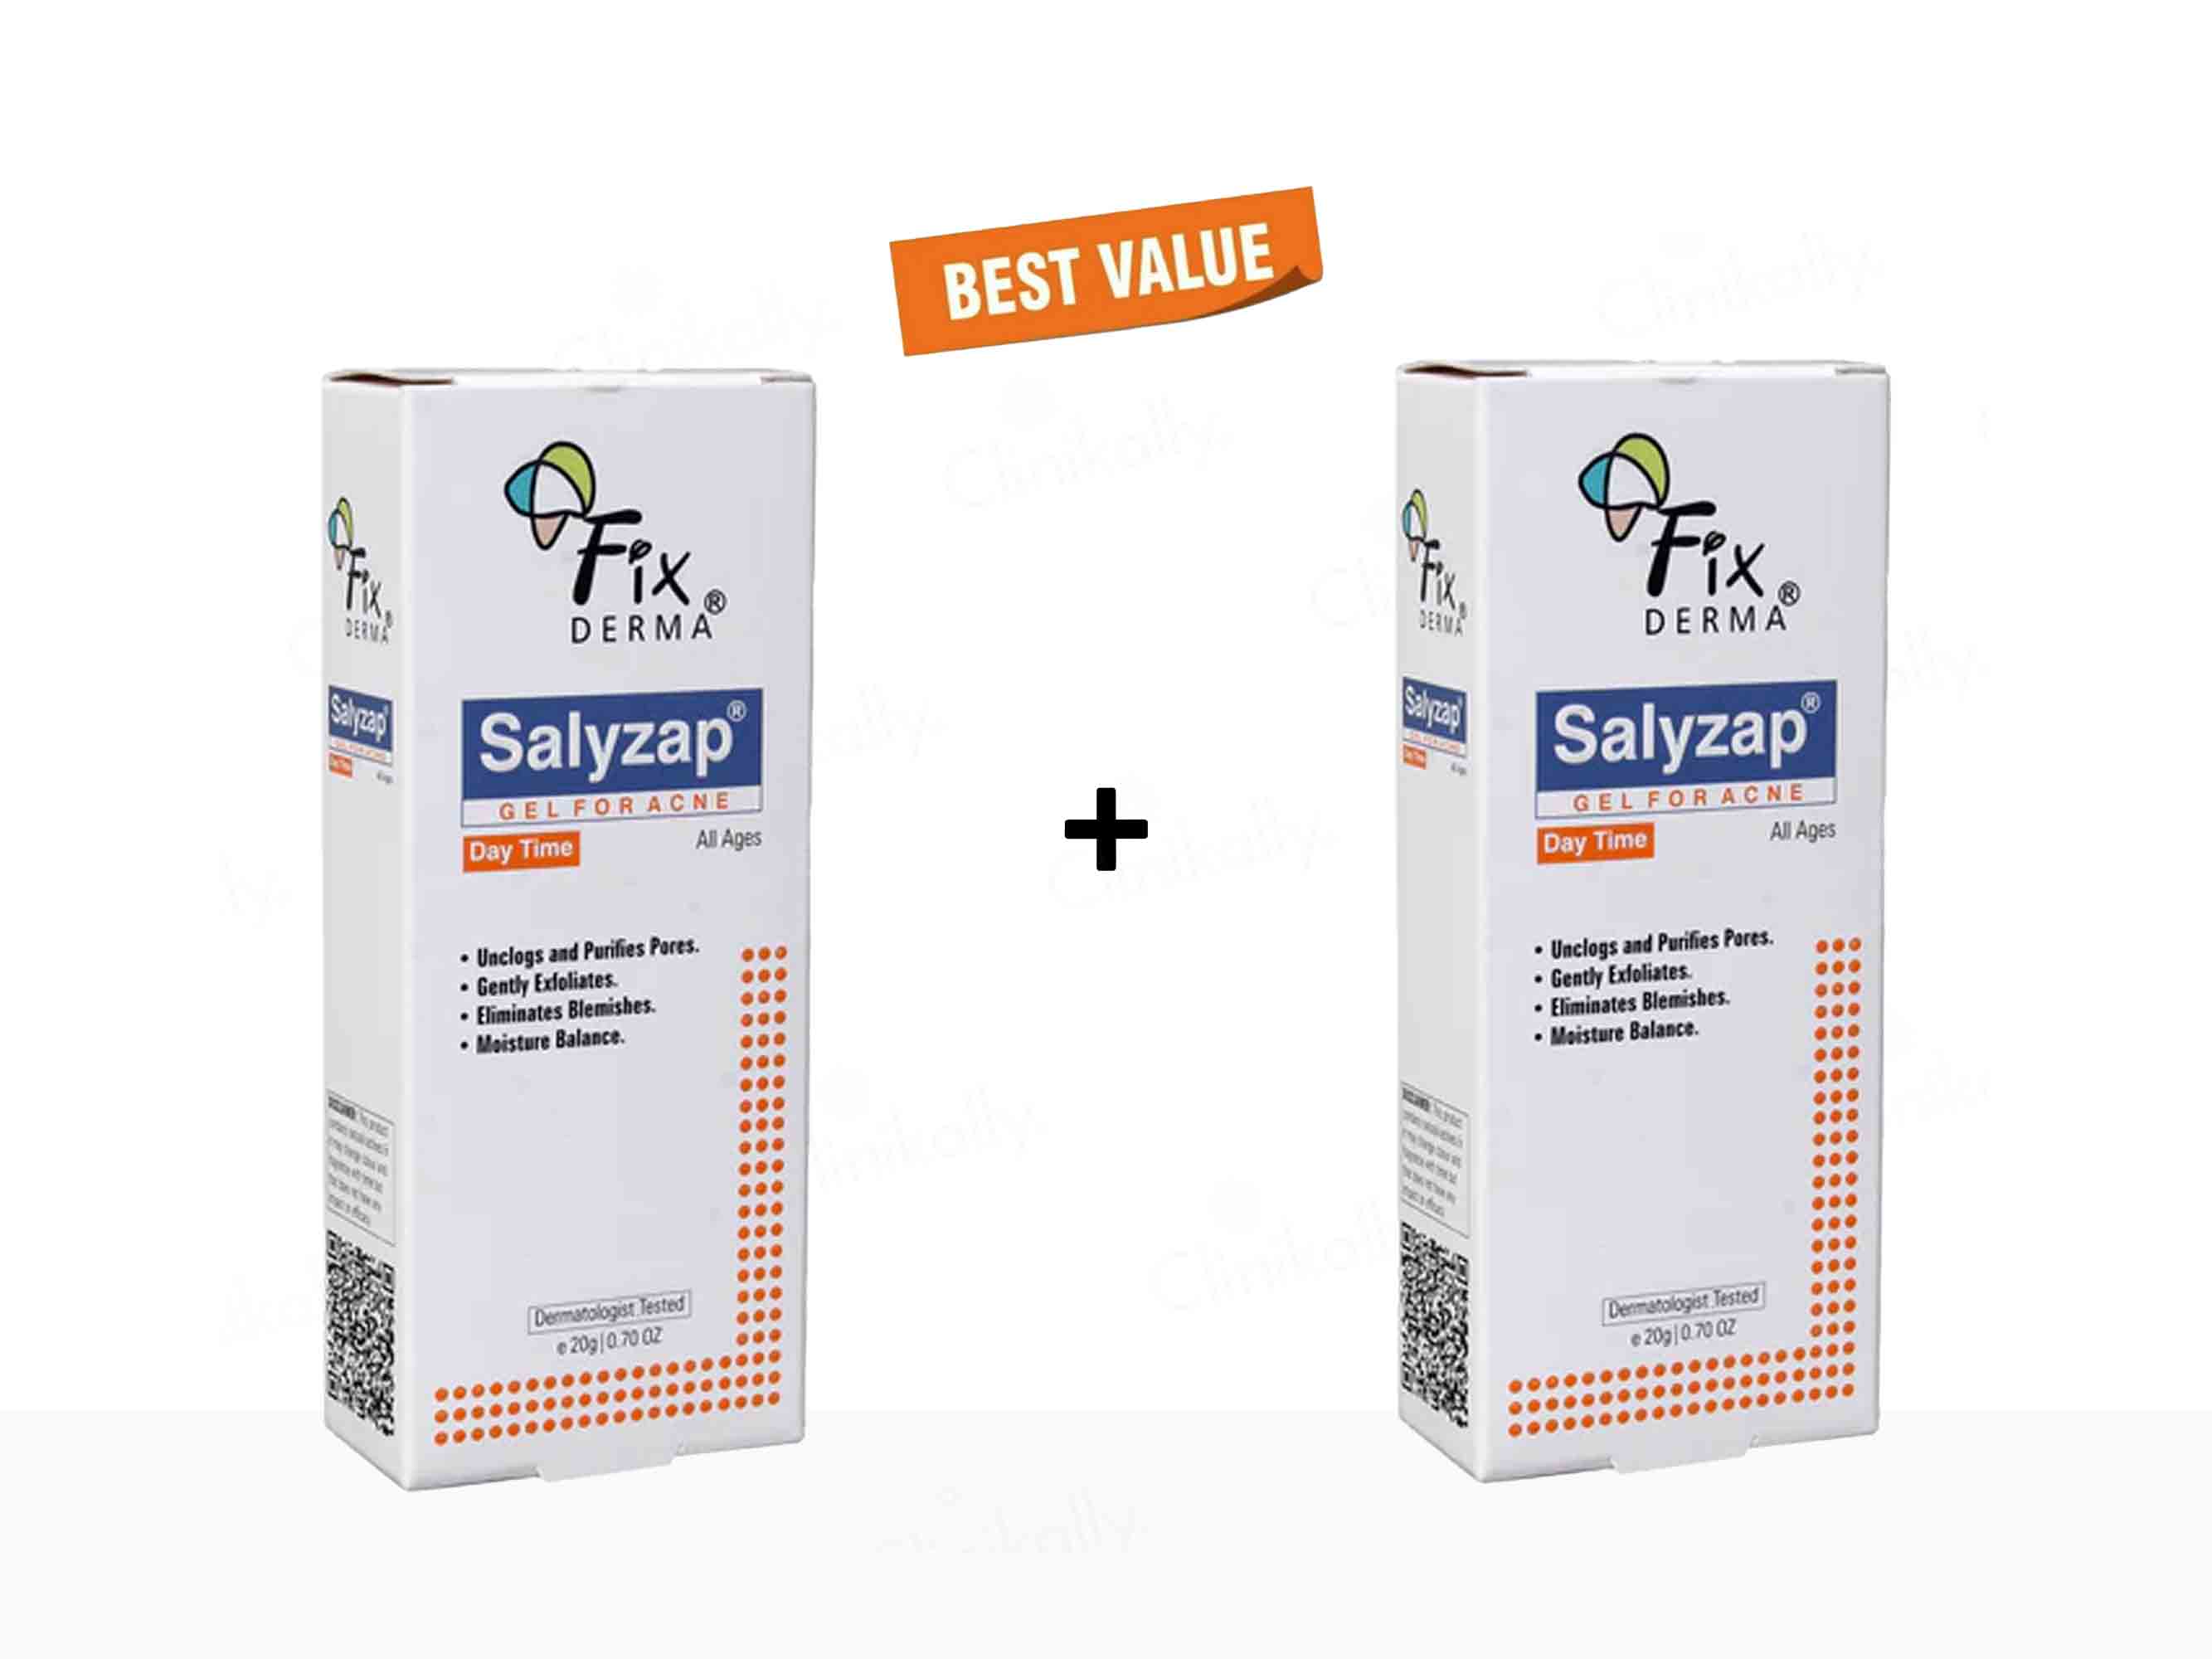 Fixderma Salyzap Gel For Acne Day Time-Clinikally